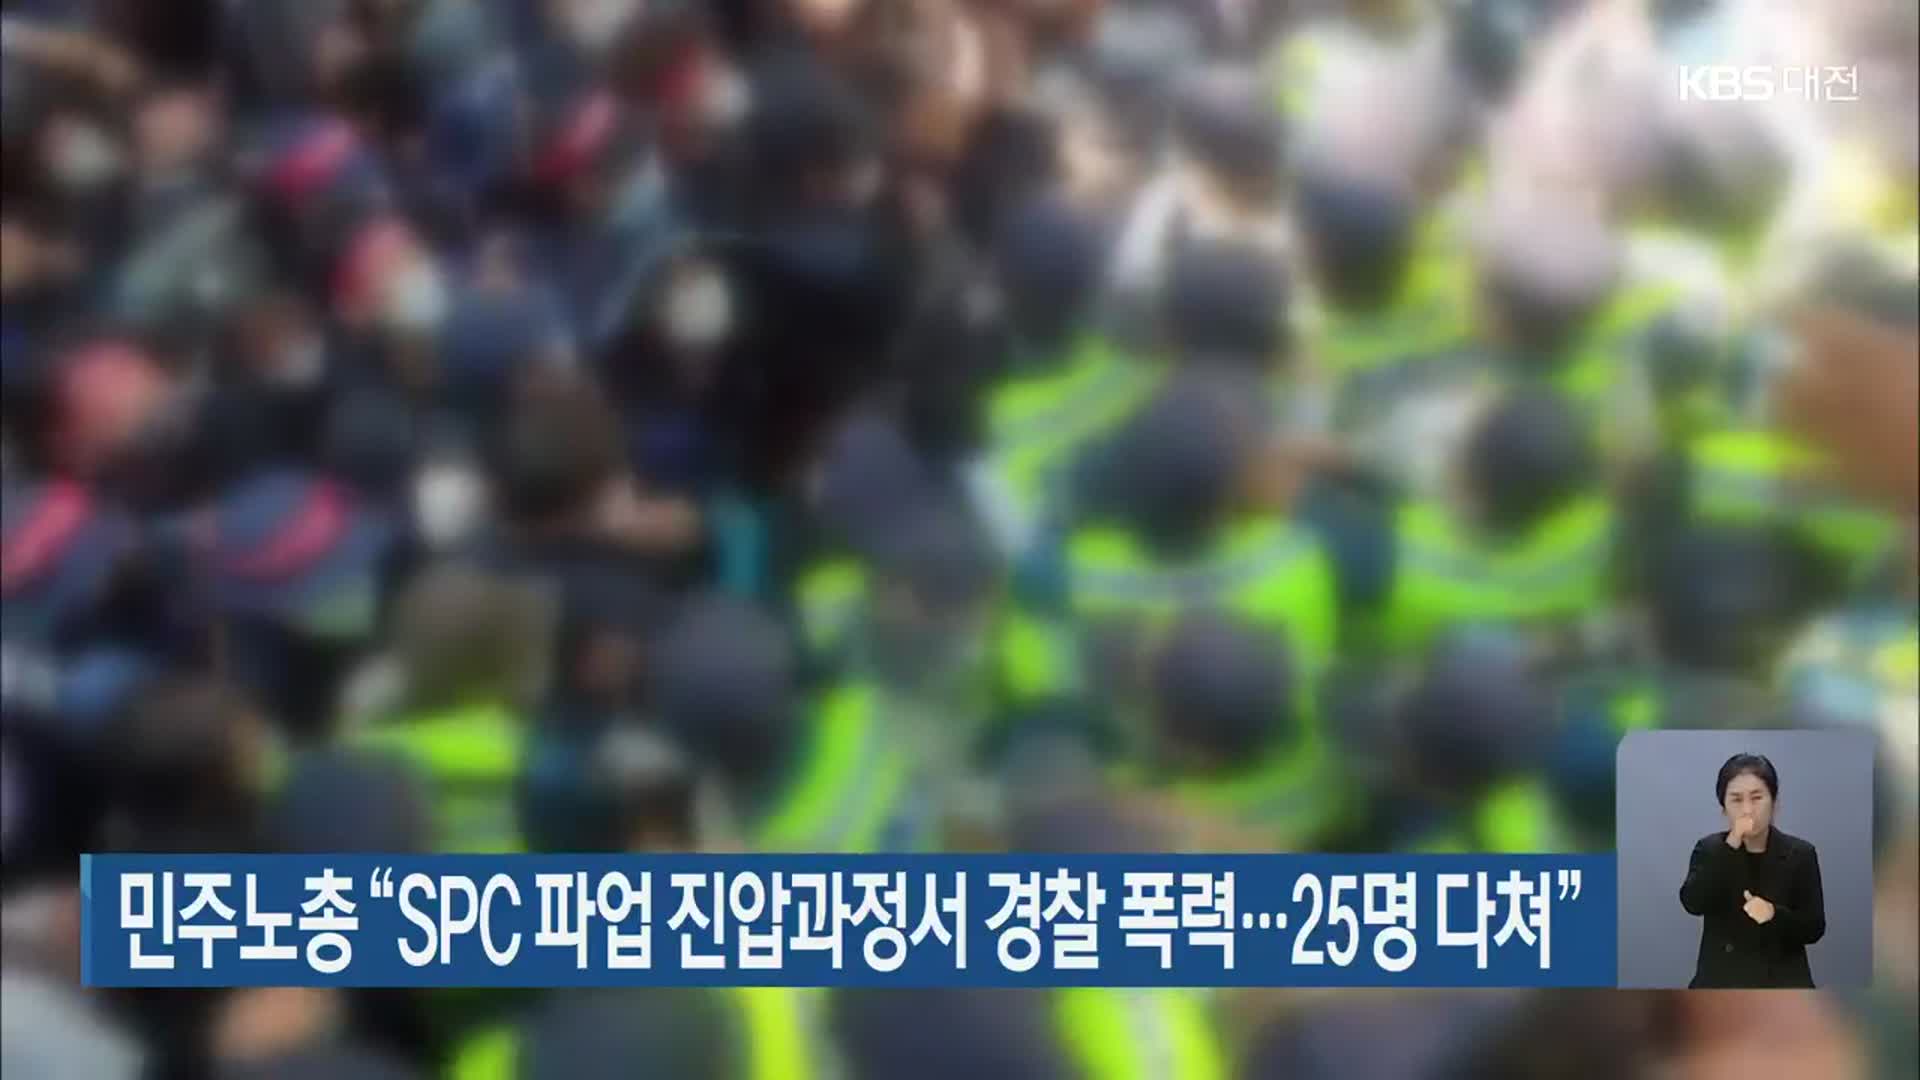 민주노총 “SPC 파업 진압과정서 경찰 폭력…25명 다쳐”